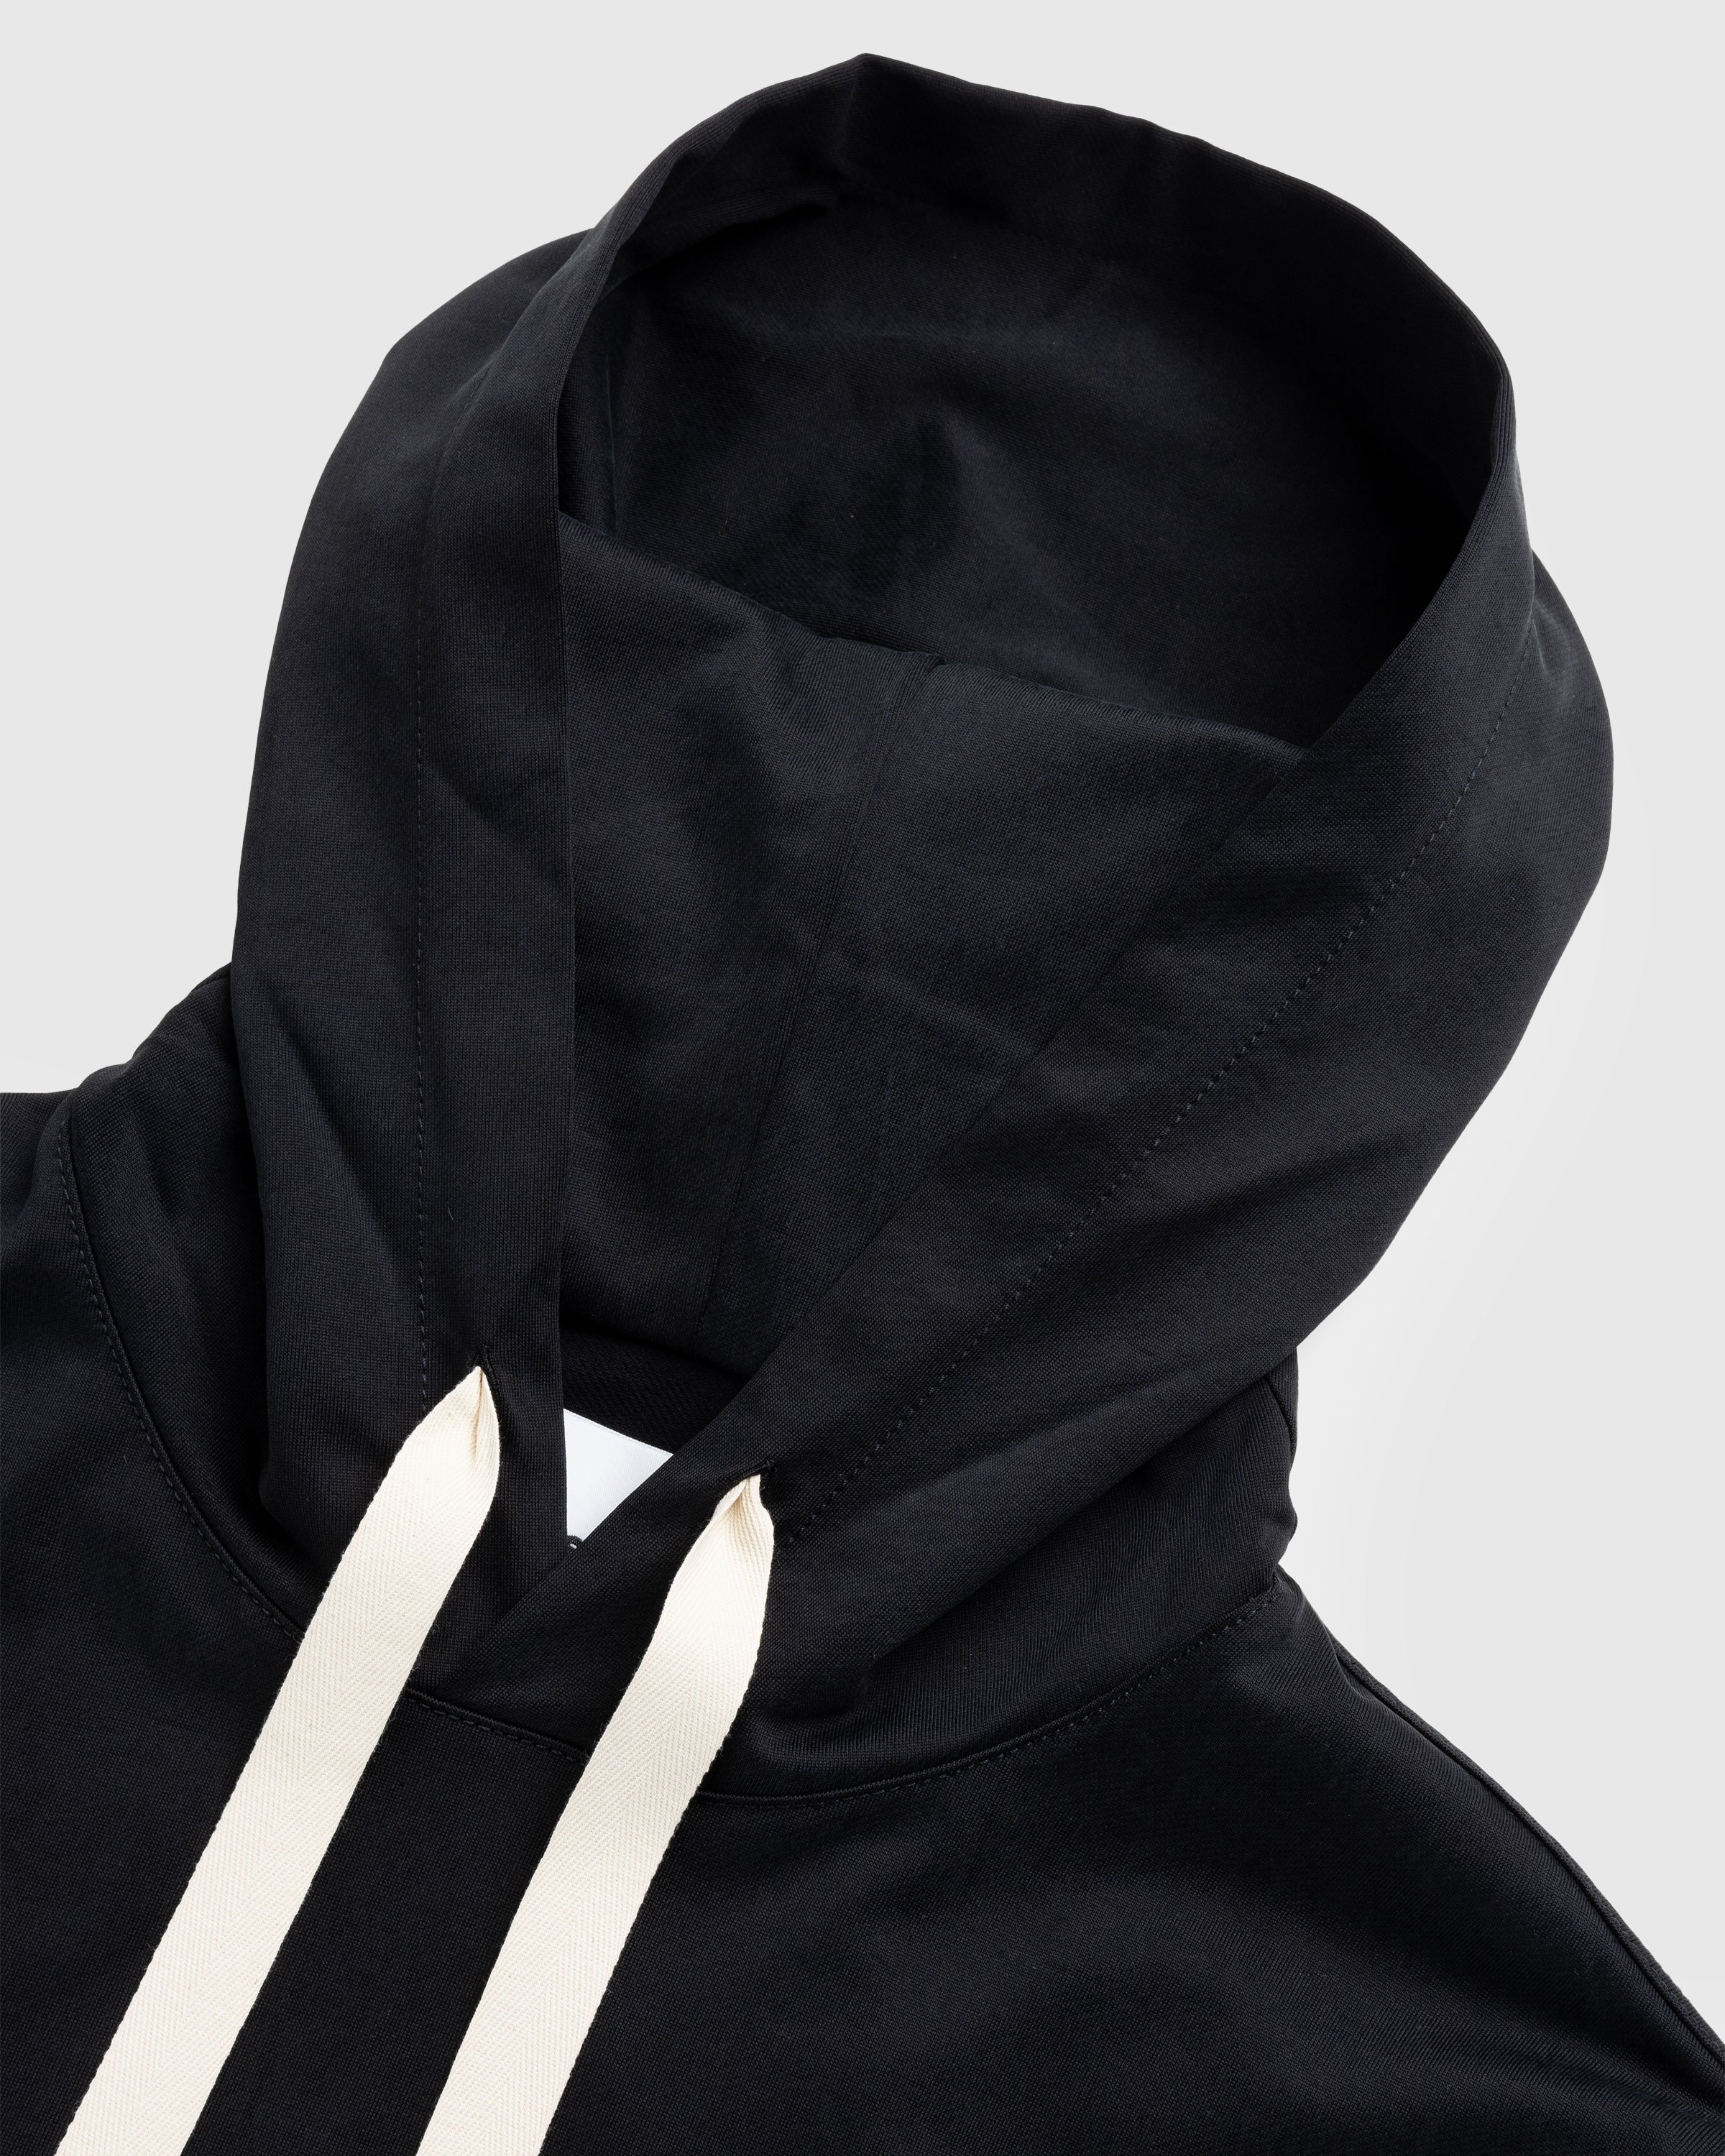 Jil Sander - Hooded Sweatshirt Black - Clothing - Black - Image 5